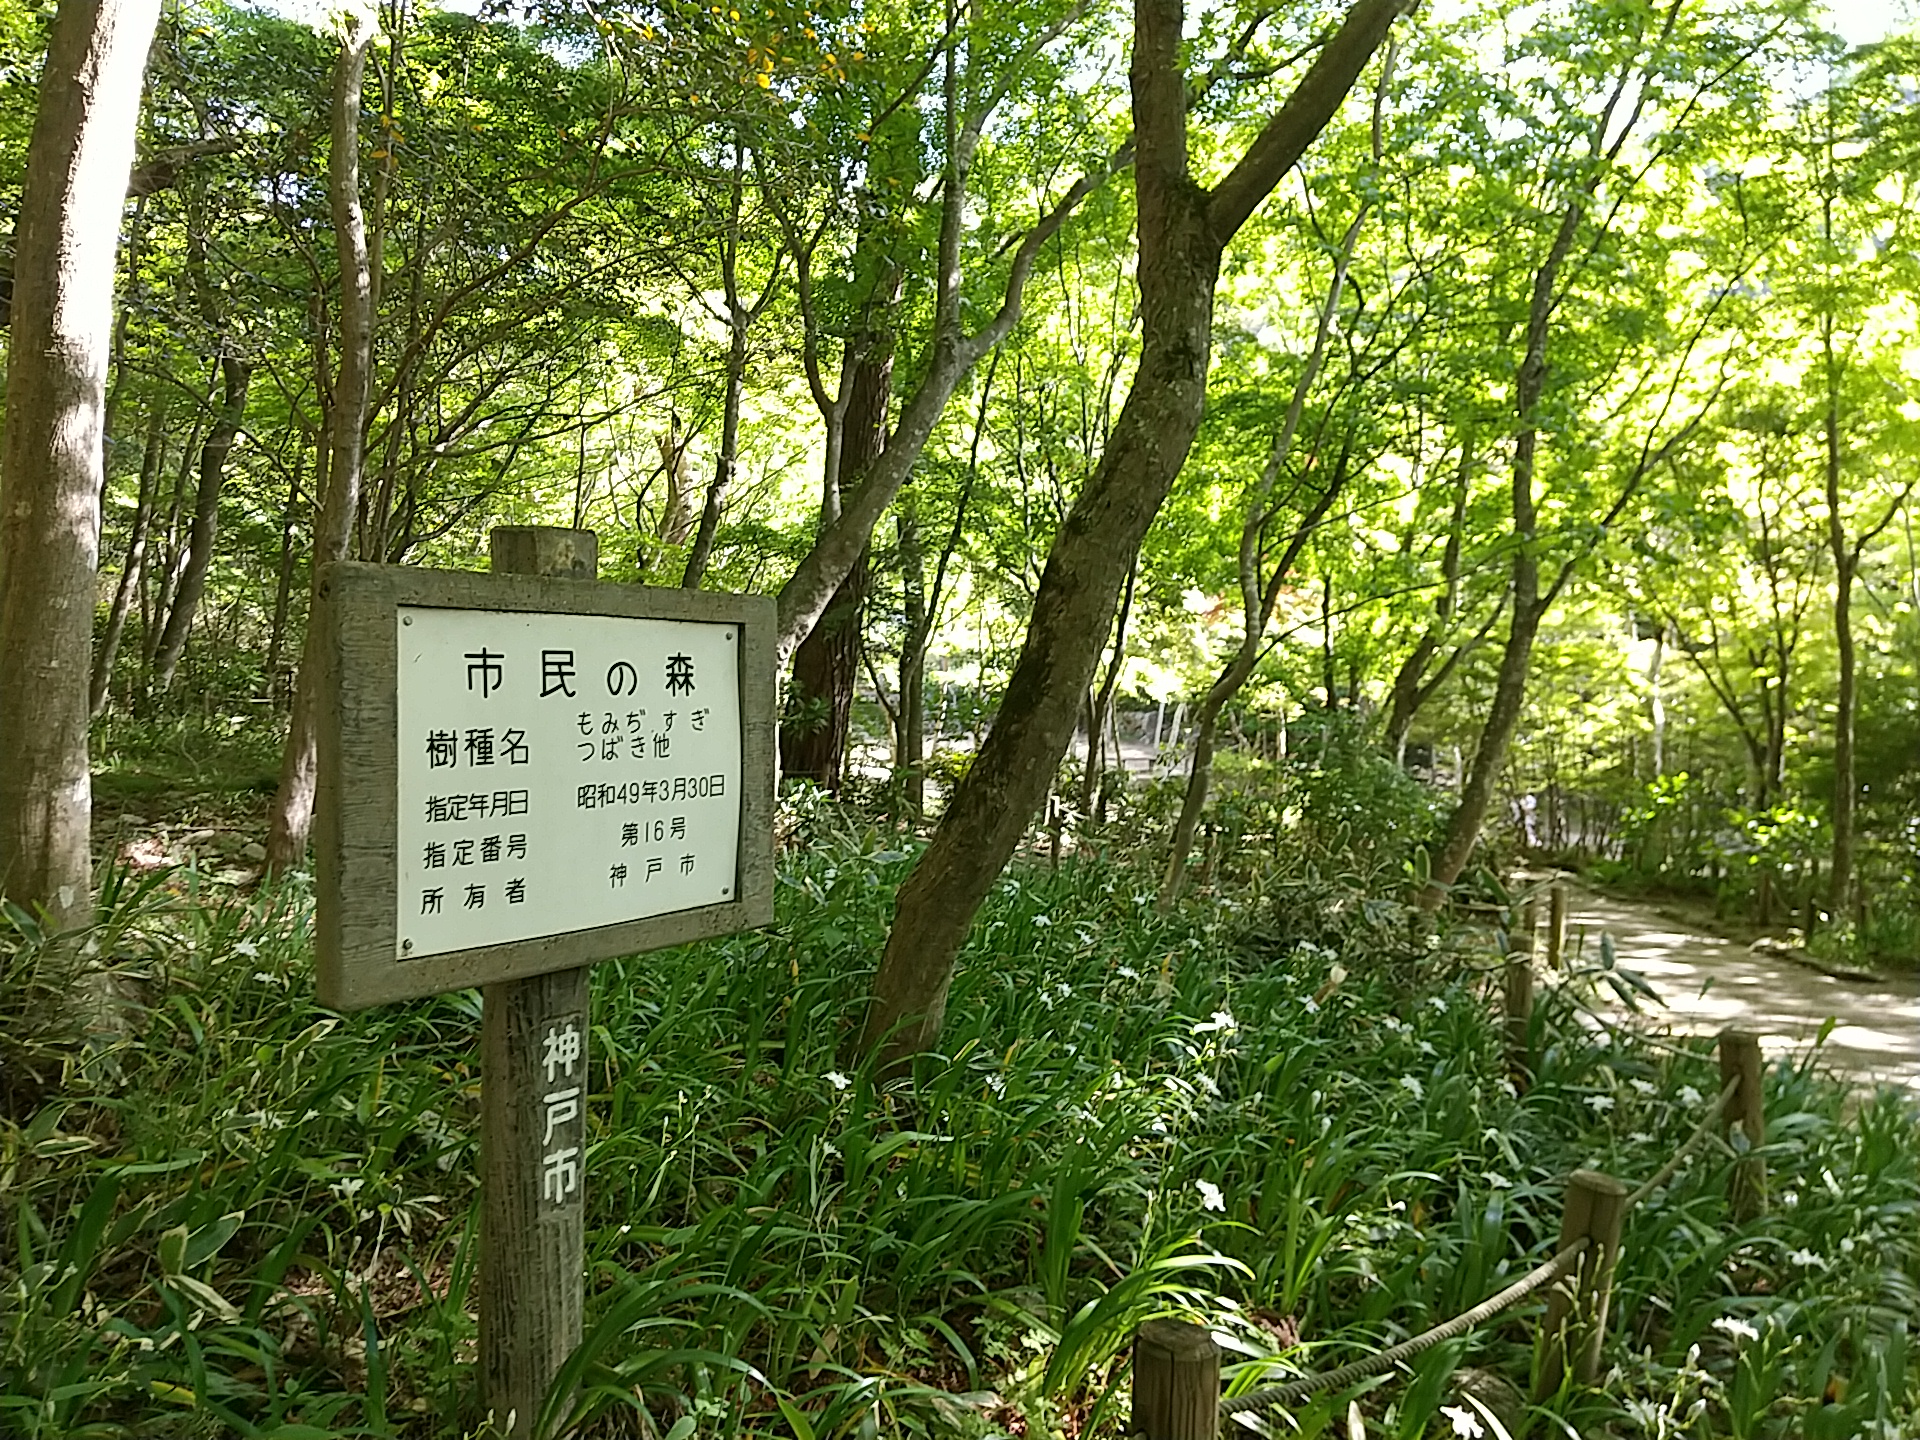 神戸市の「市民の森」に指定された、瑞宝寺公園の市民の森看板